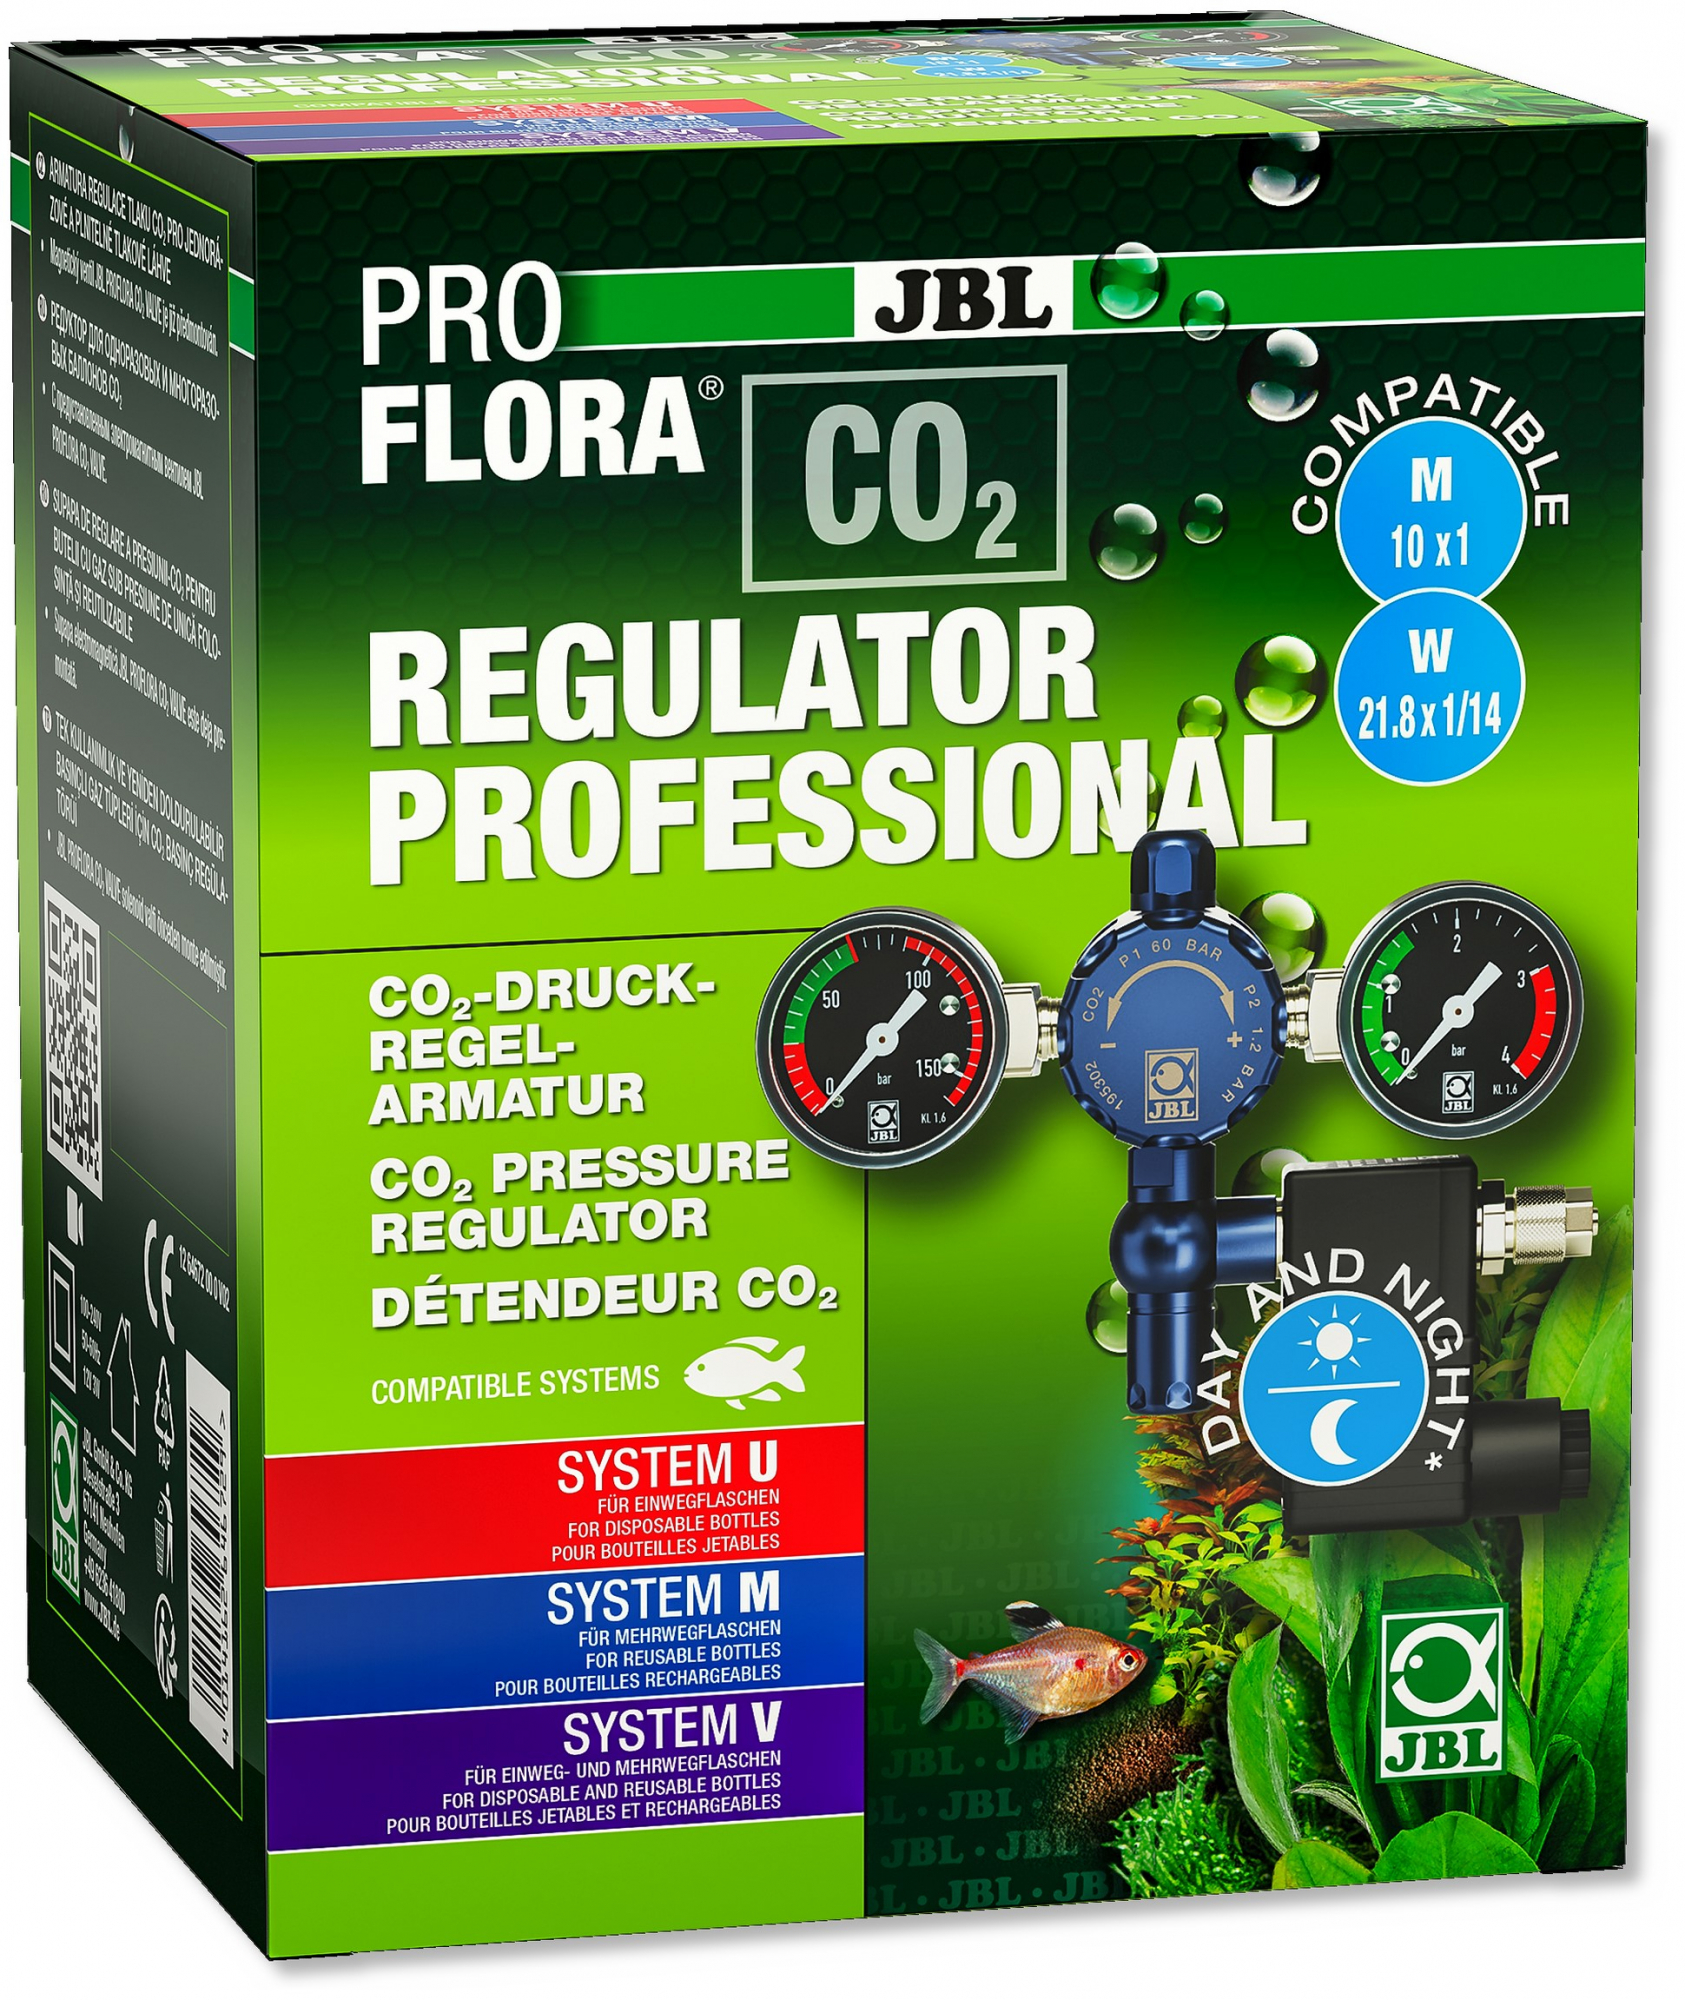 JBL Proflora Regulator Professional Détendeur pour système de fertilisation CO2 